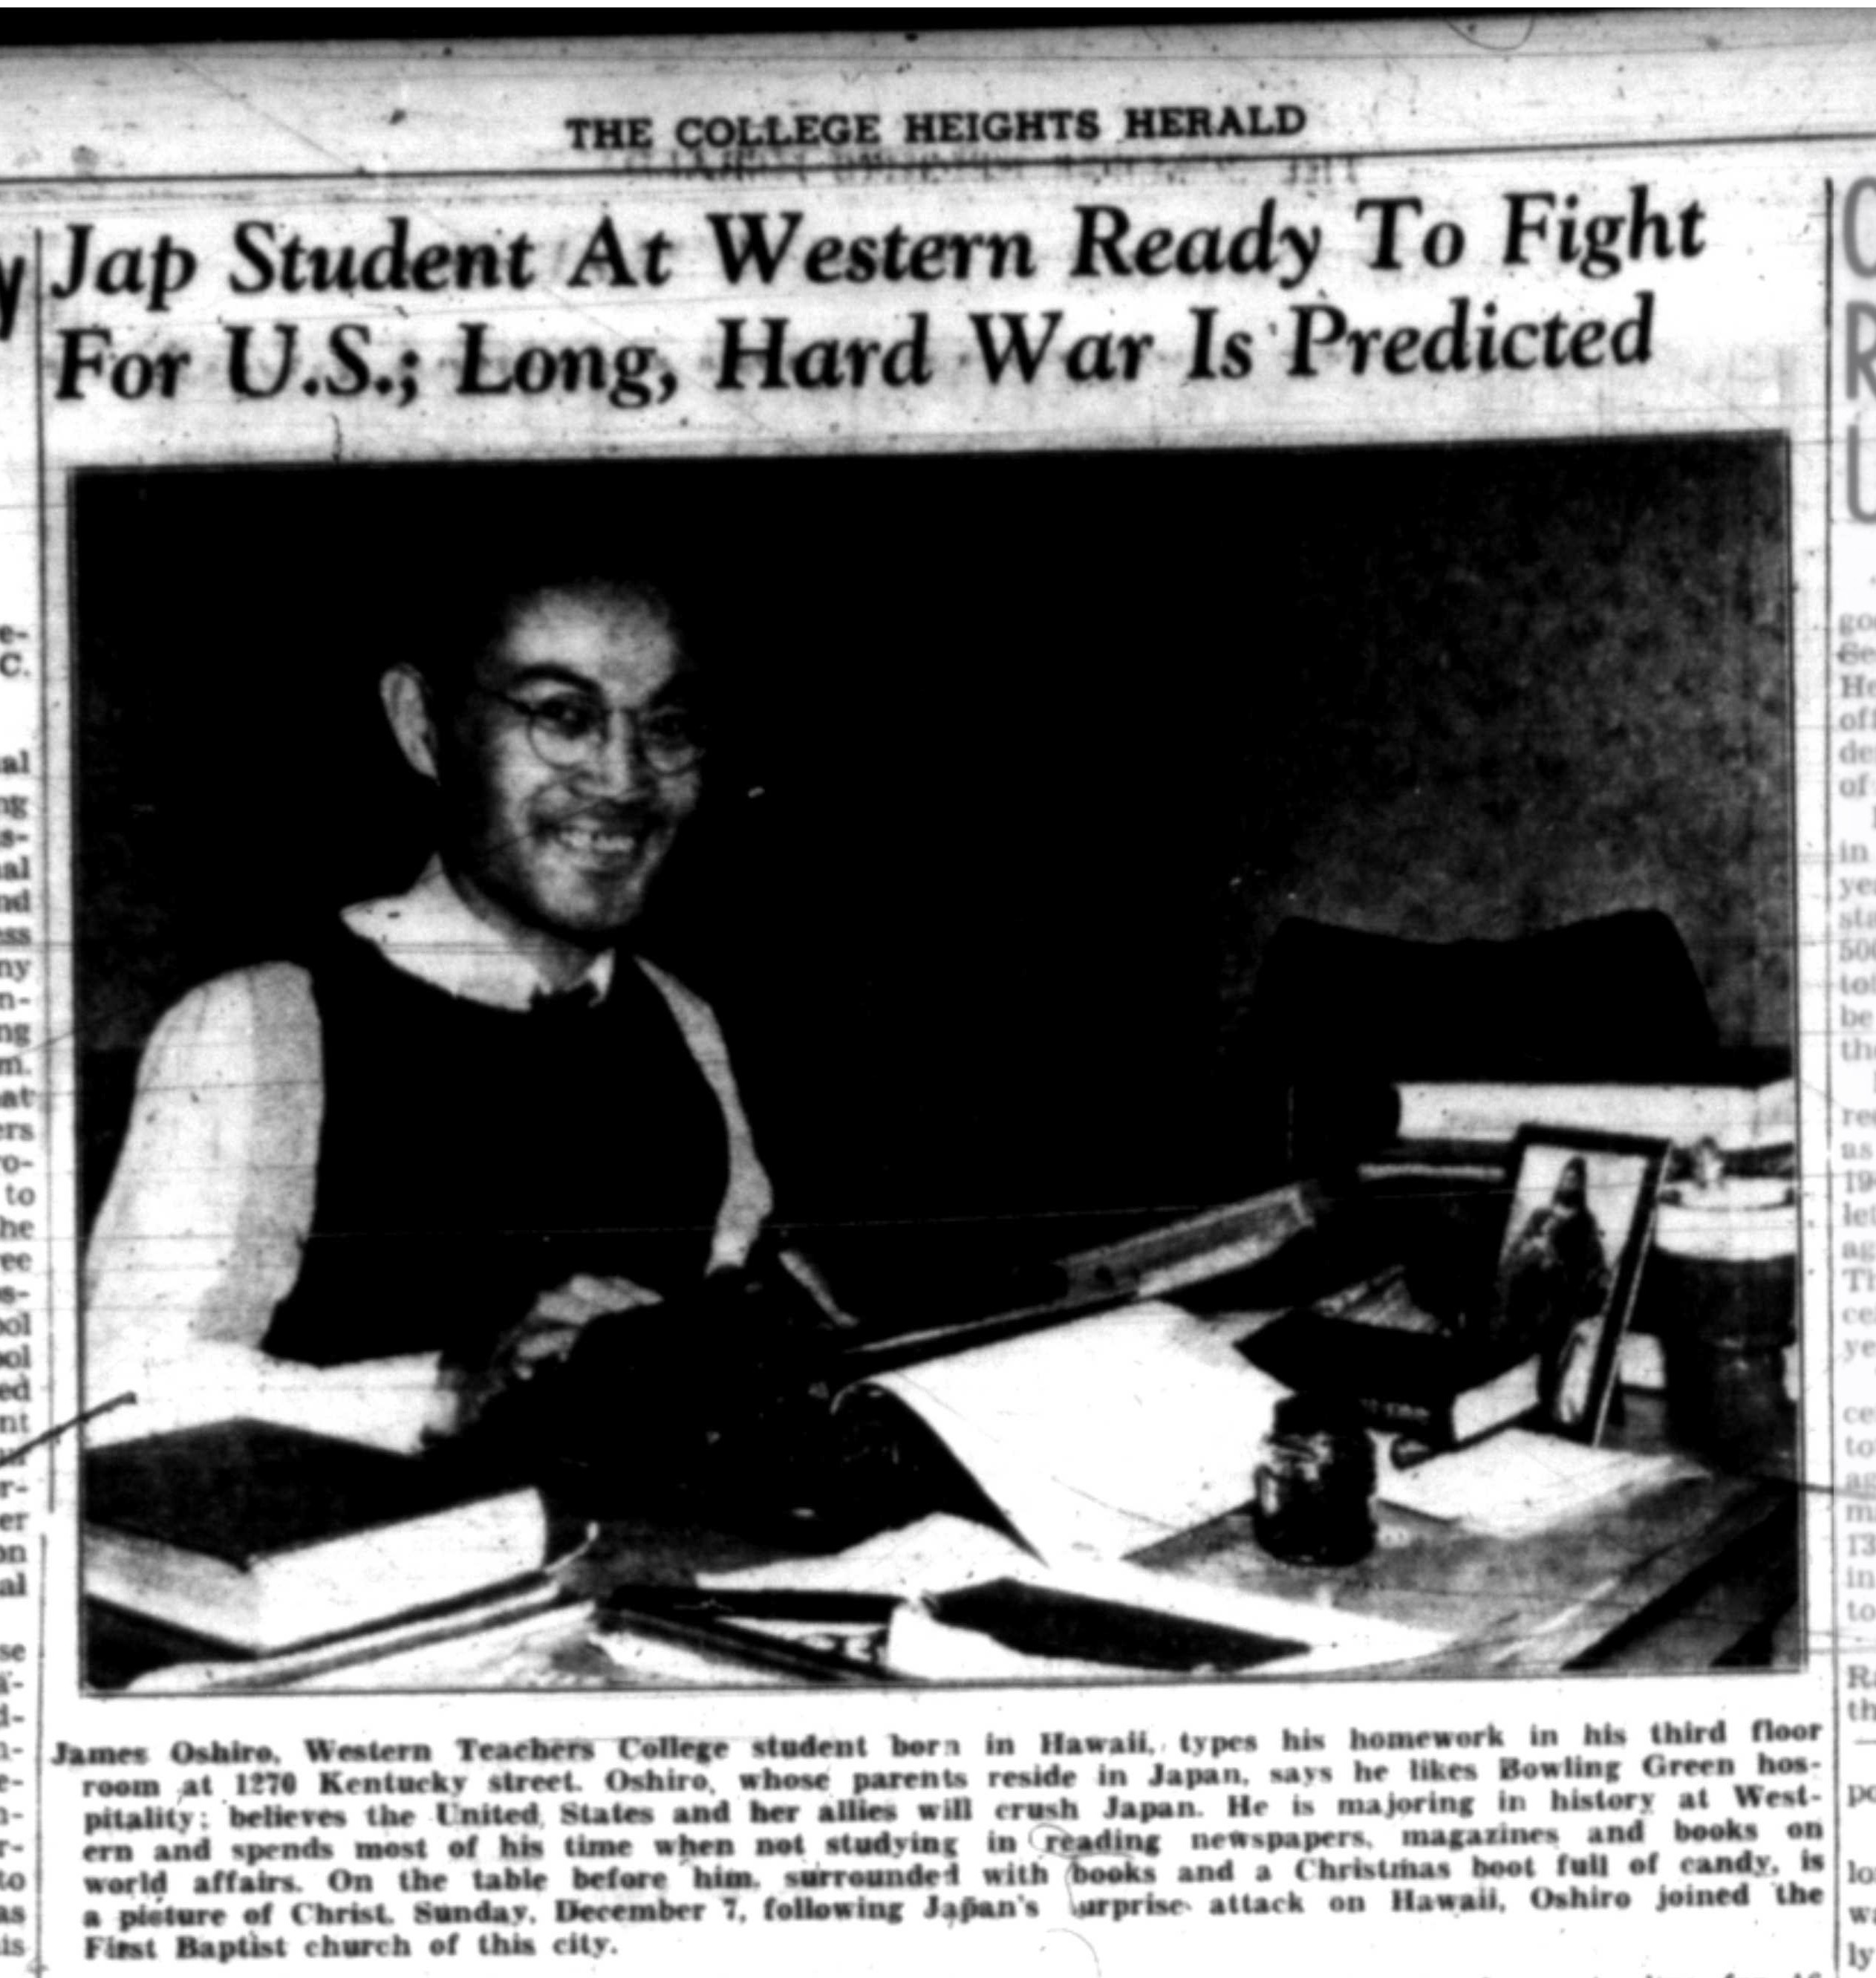 College Heights Herald, 1/16/1942